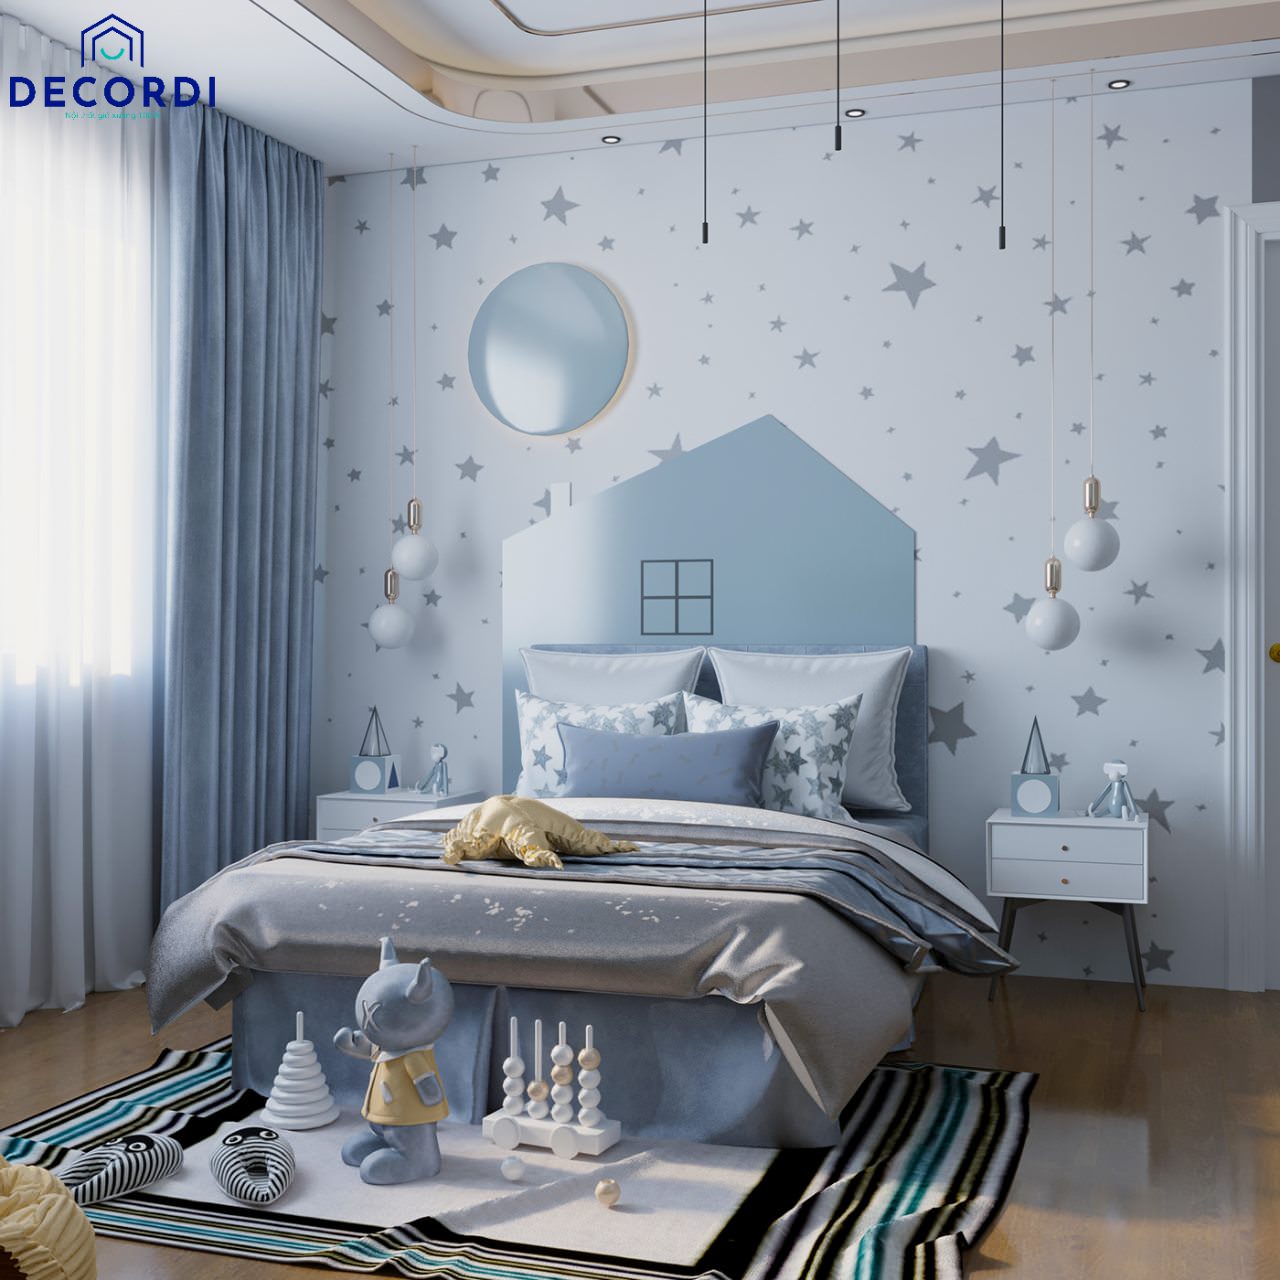 Lạ mắt với mẫu trang trí phòng ngủ bằng giấy dán tường ngôi sao